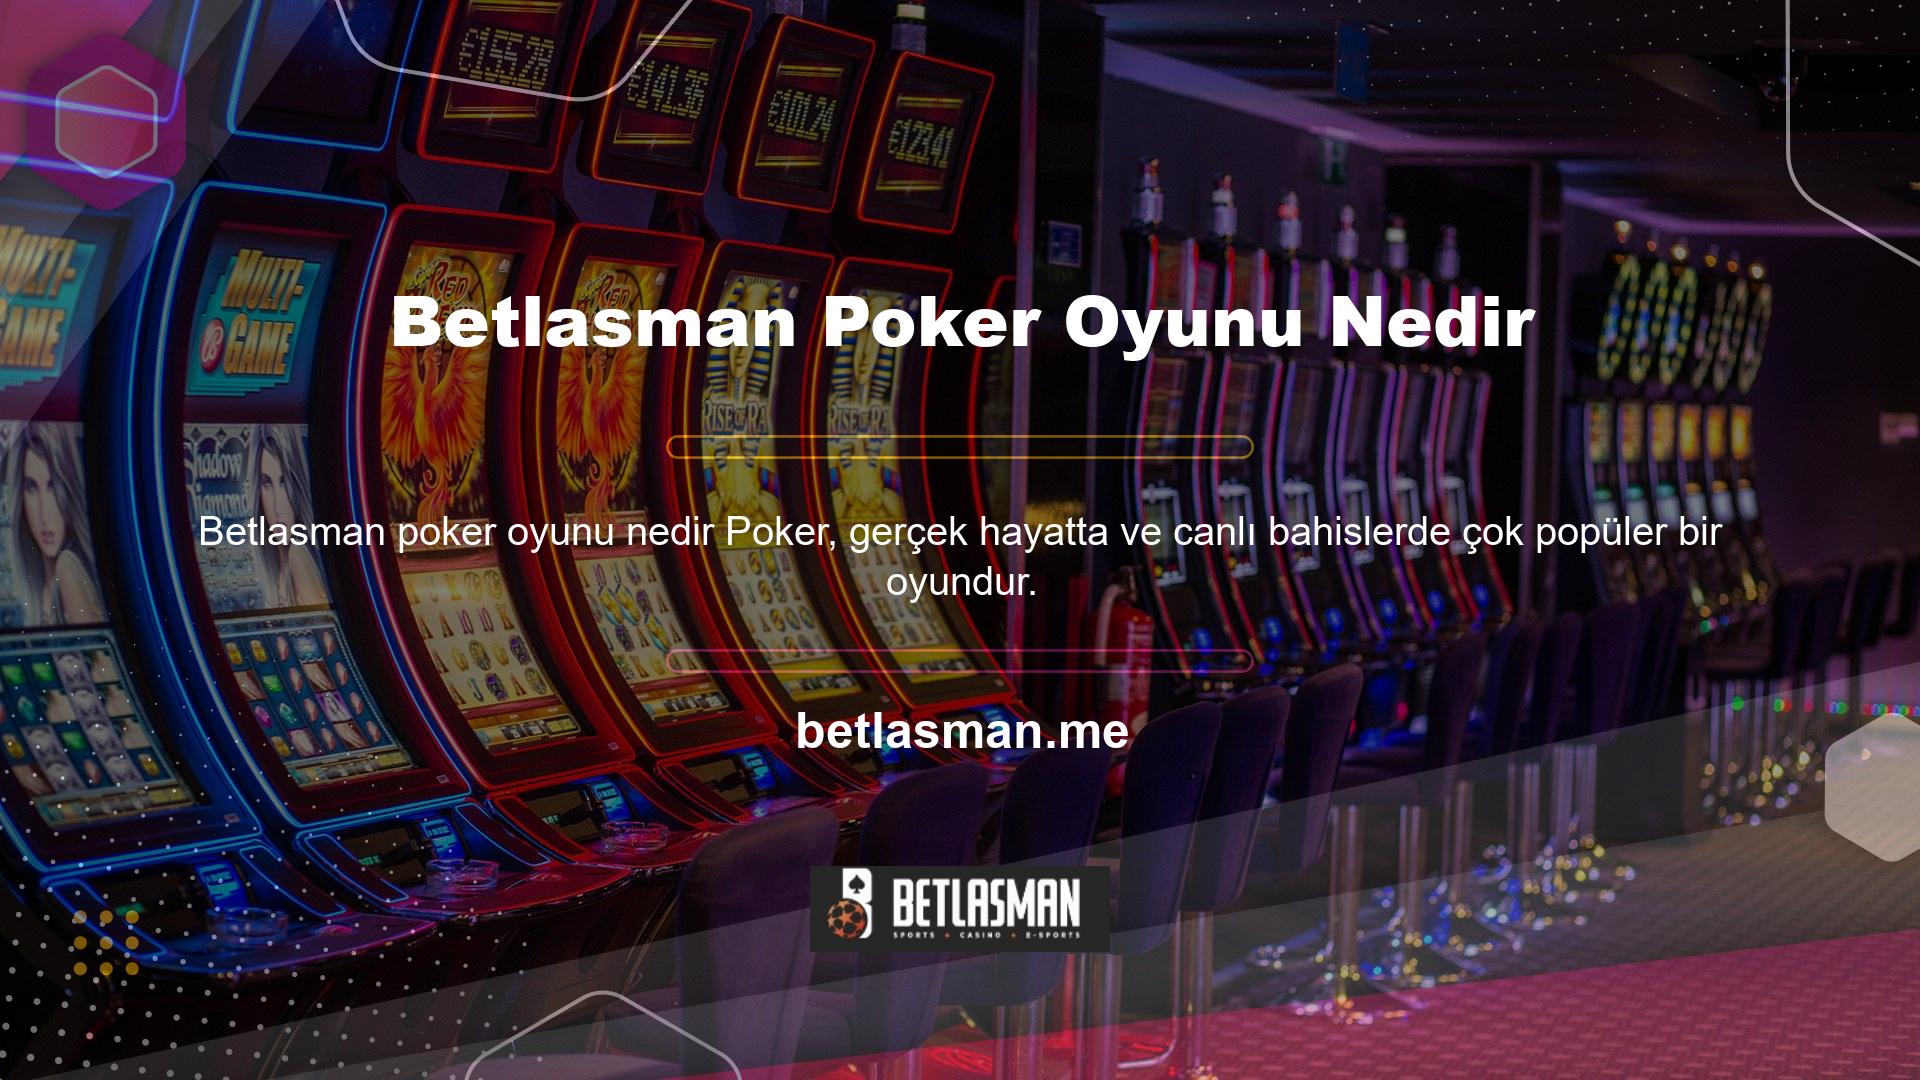 Bahisçilerin Betlasman favori poker oyunu, güvenilirliği ve karlılığıyla da etkiliyor